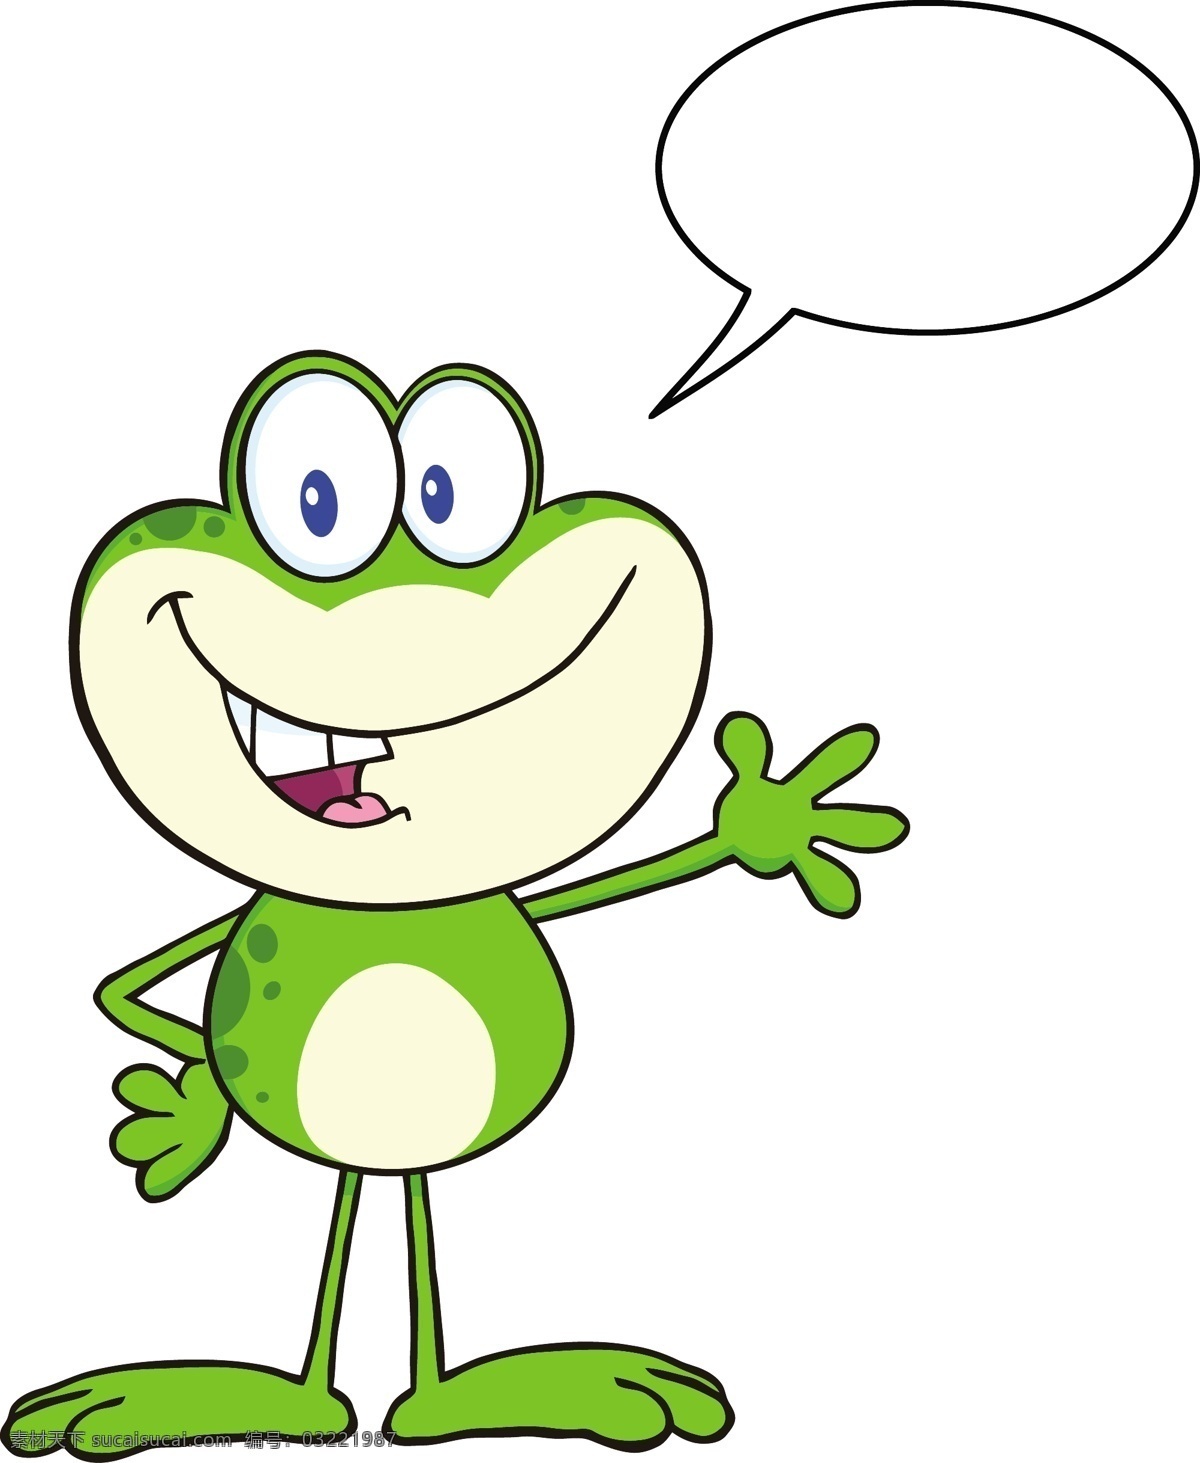 青蛙 动物 logo 手绘 对话框 卡通青蛙 矢量 野生动物 生物世界